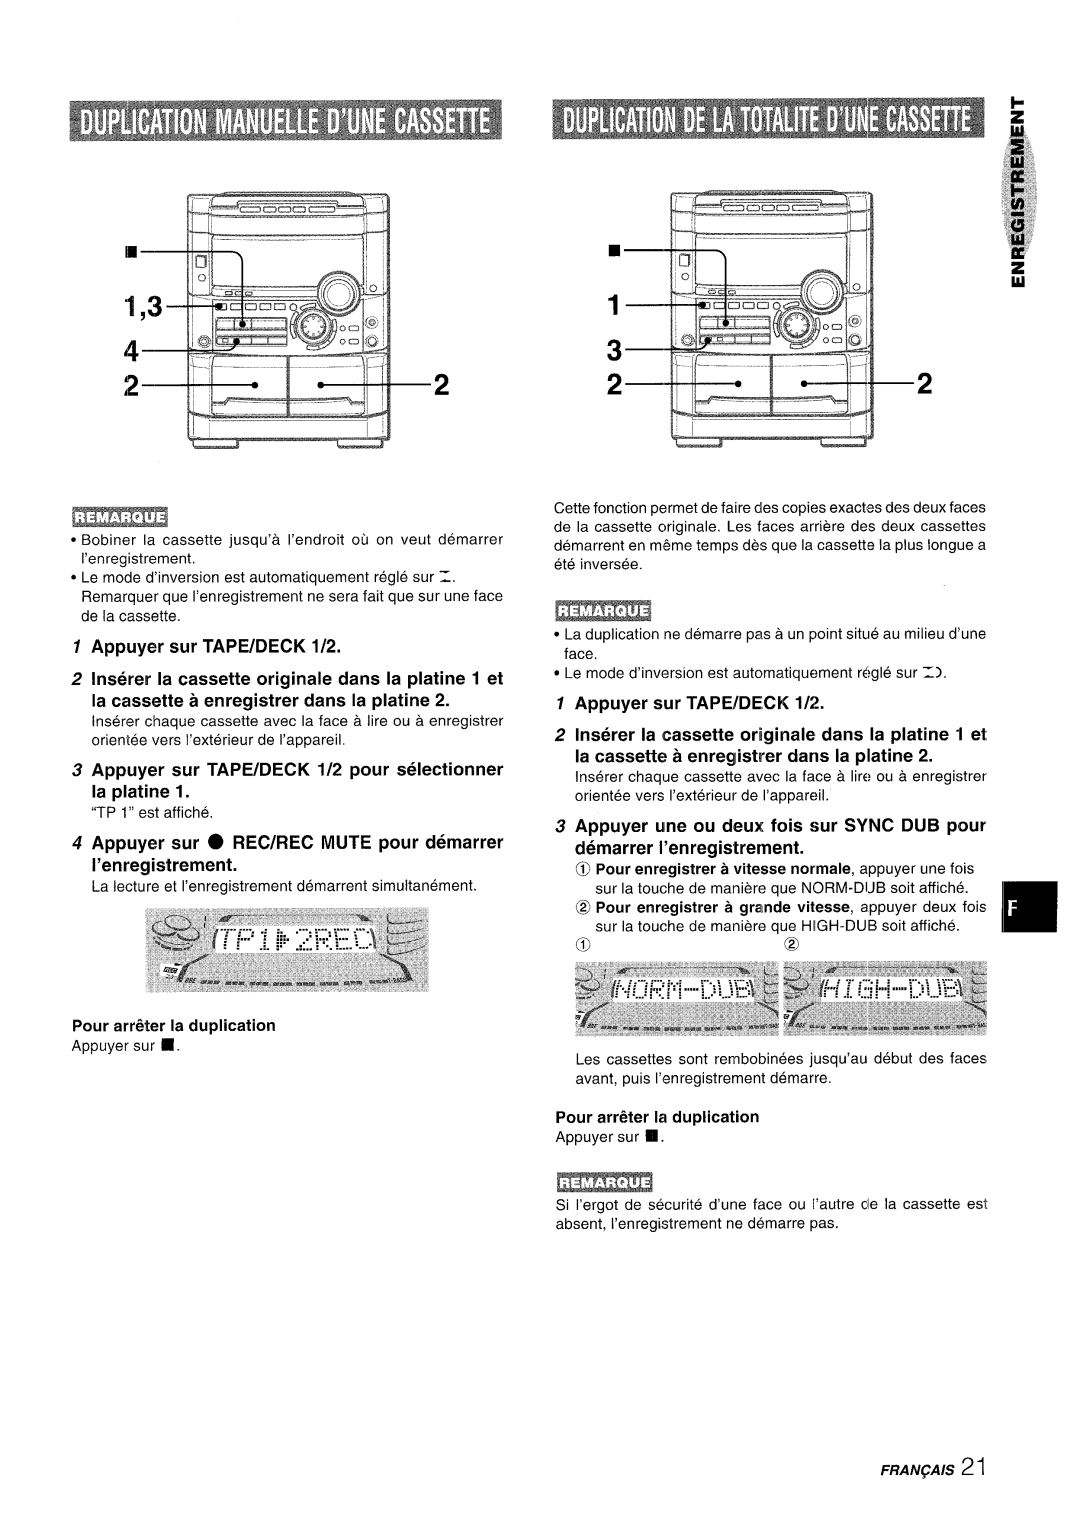 Sony NSX-A777 manual Appuyer sur TAPE/DECK 1/2 pour selectionner la platine, Appuyer sur TAPE/DE,CK 1/2, Fraiv~A/S 